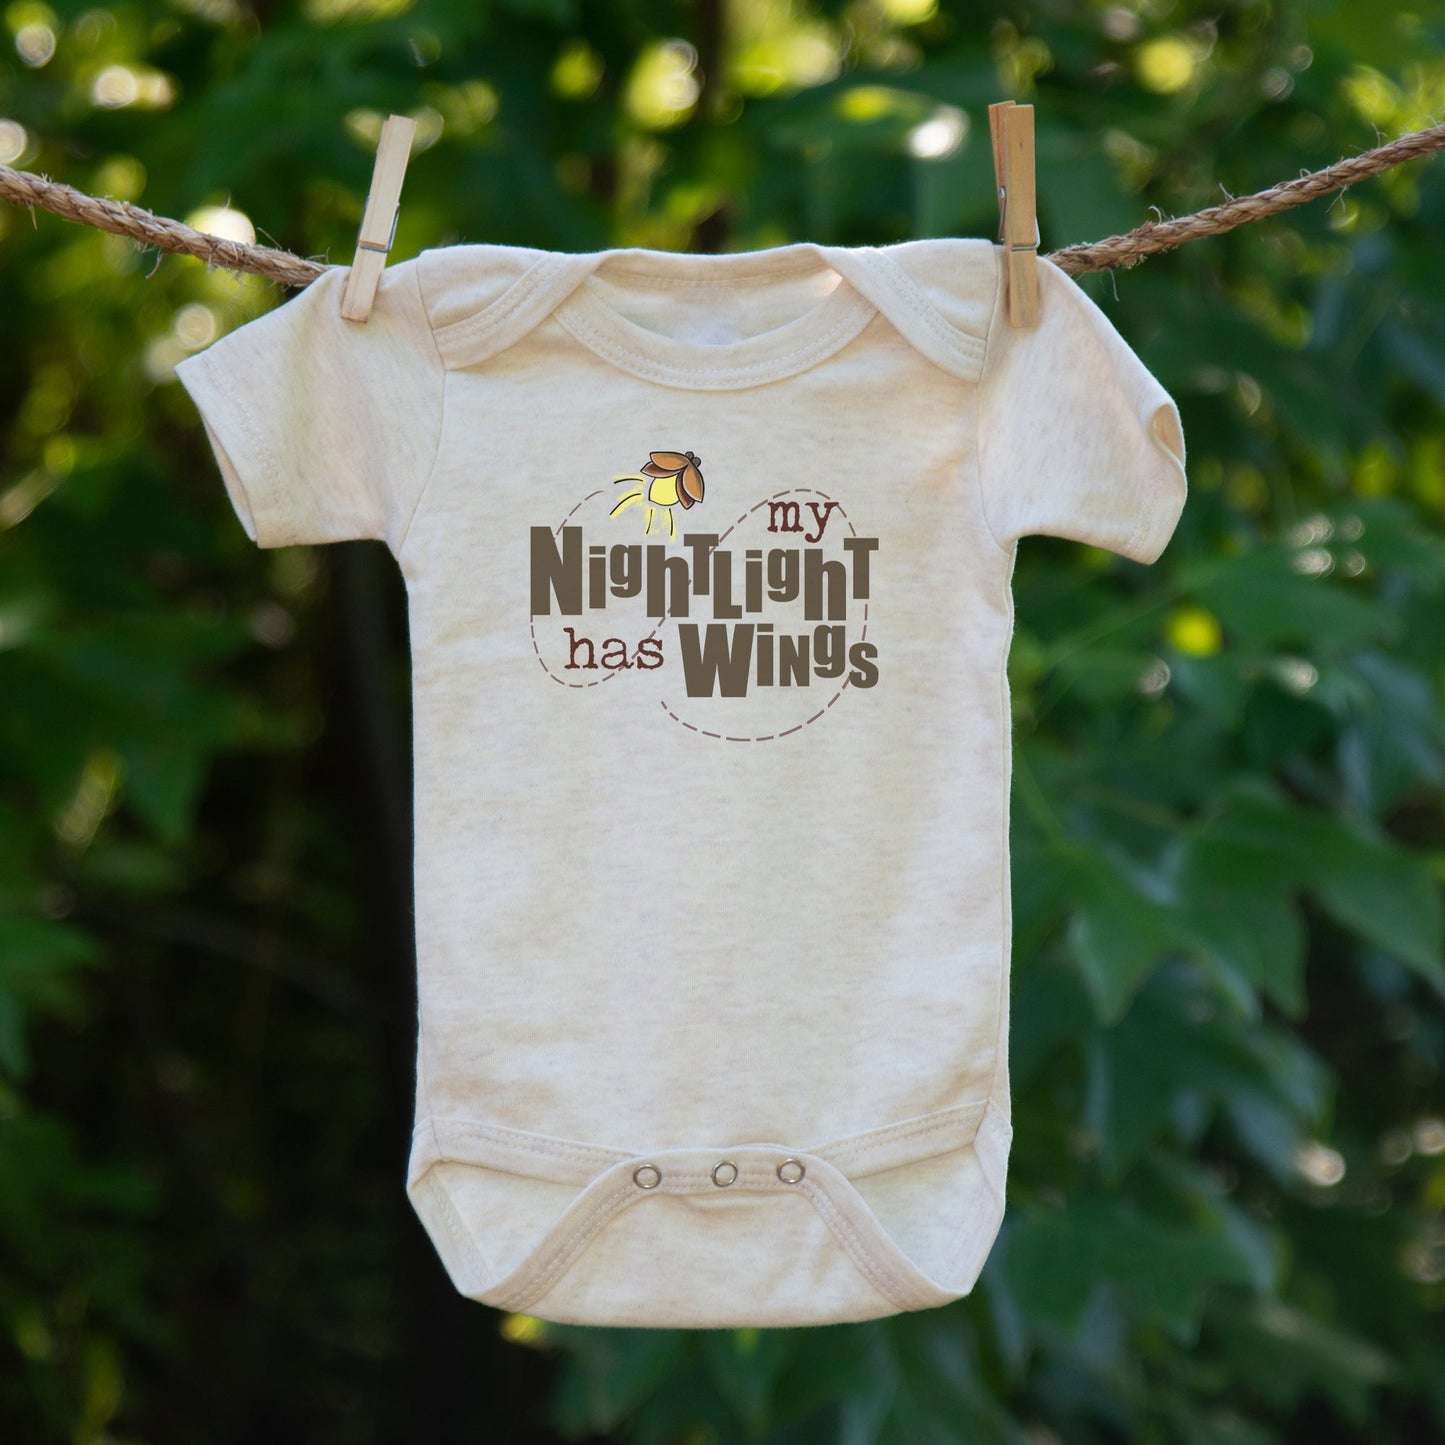 "My Nightlight has Wings" Beige Camping Baby Body Suit